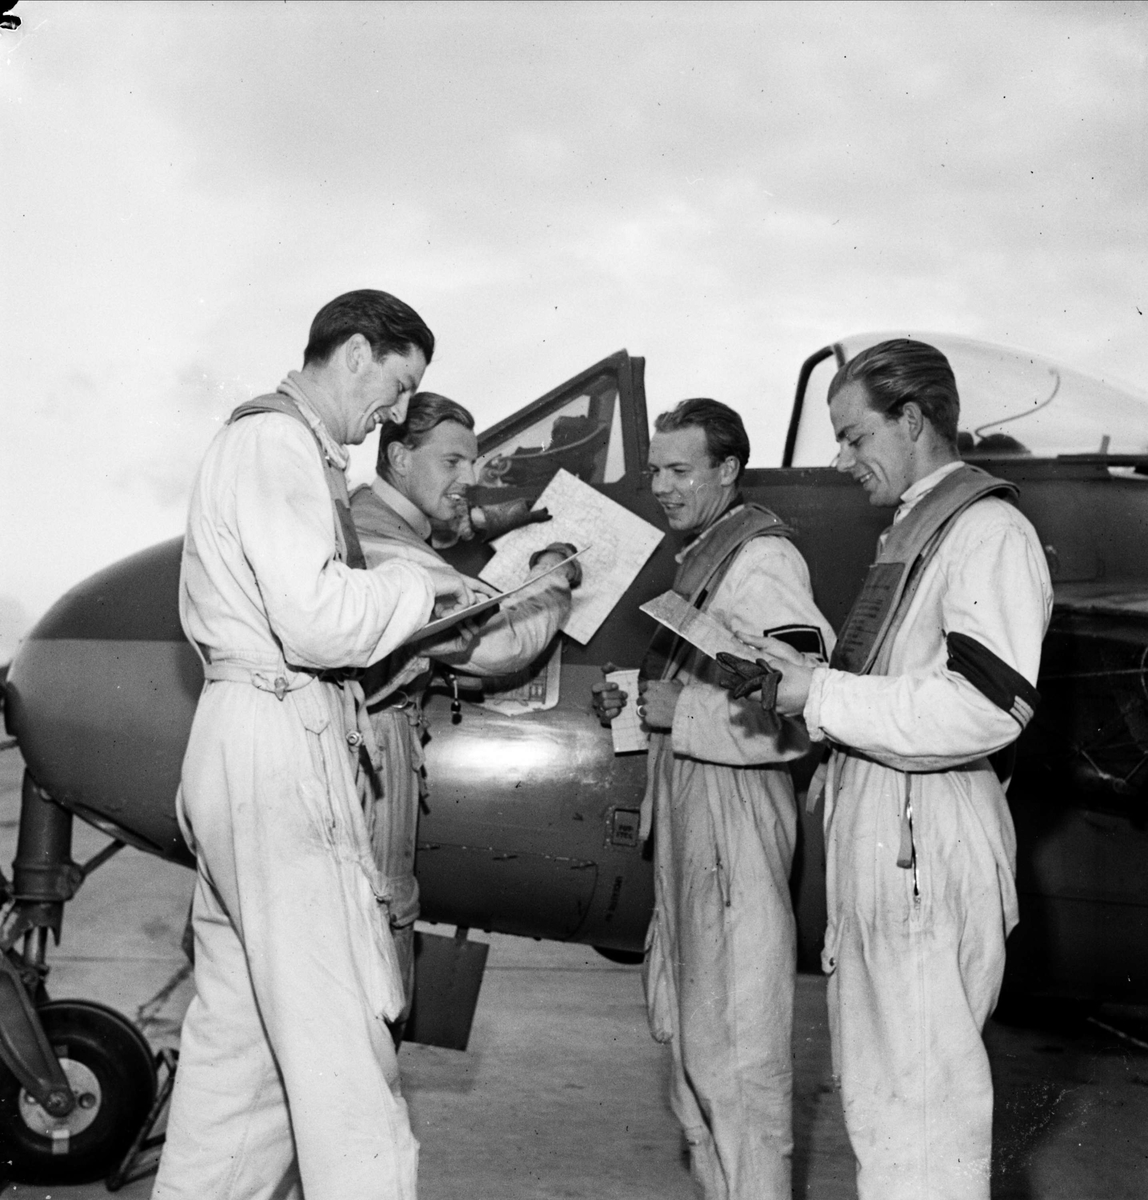 Flygeskader har övning, F 16 Upplands Flygflottilj, Ärna, Uppsala 1948